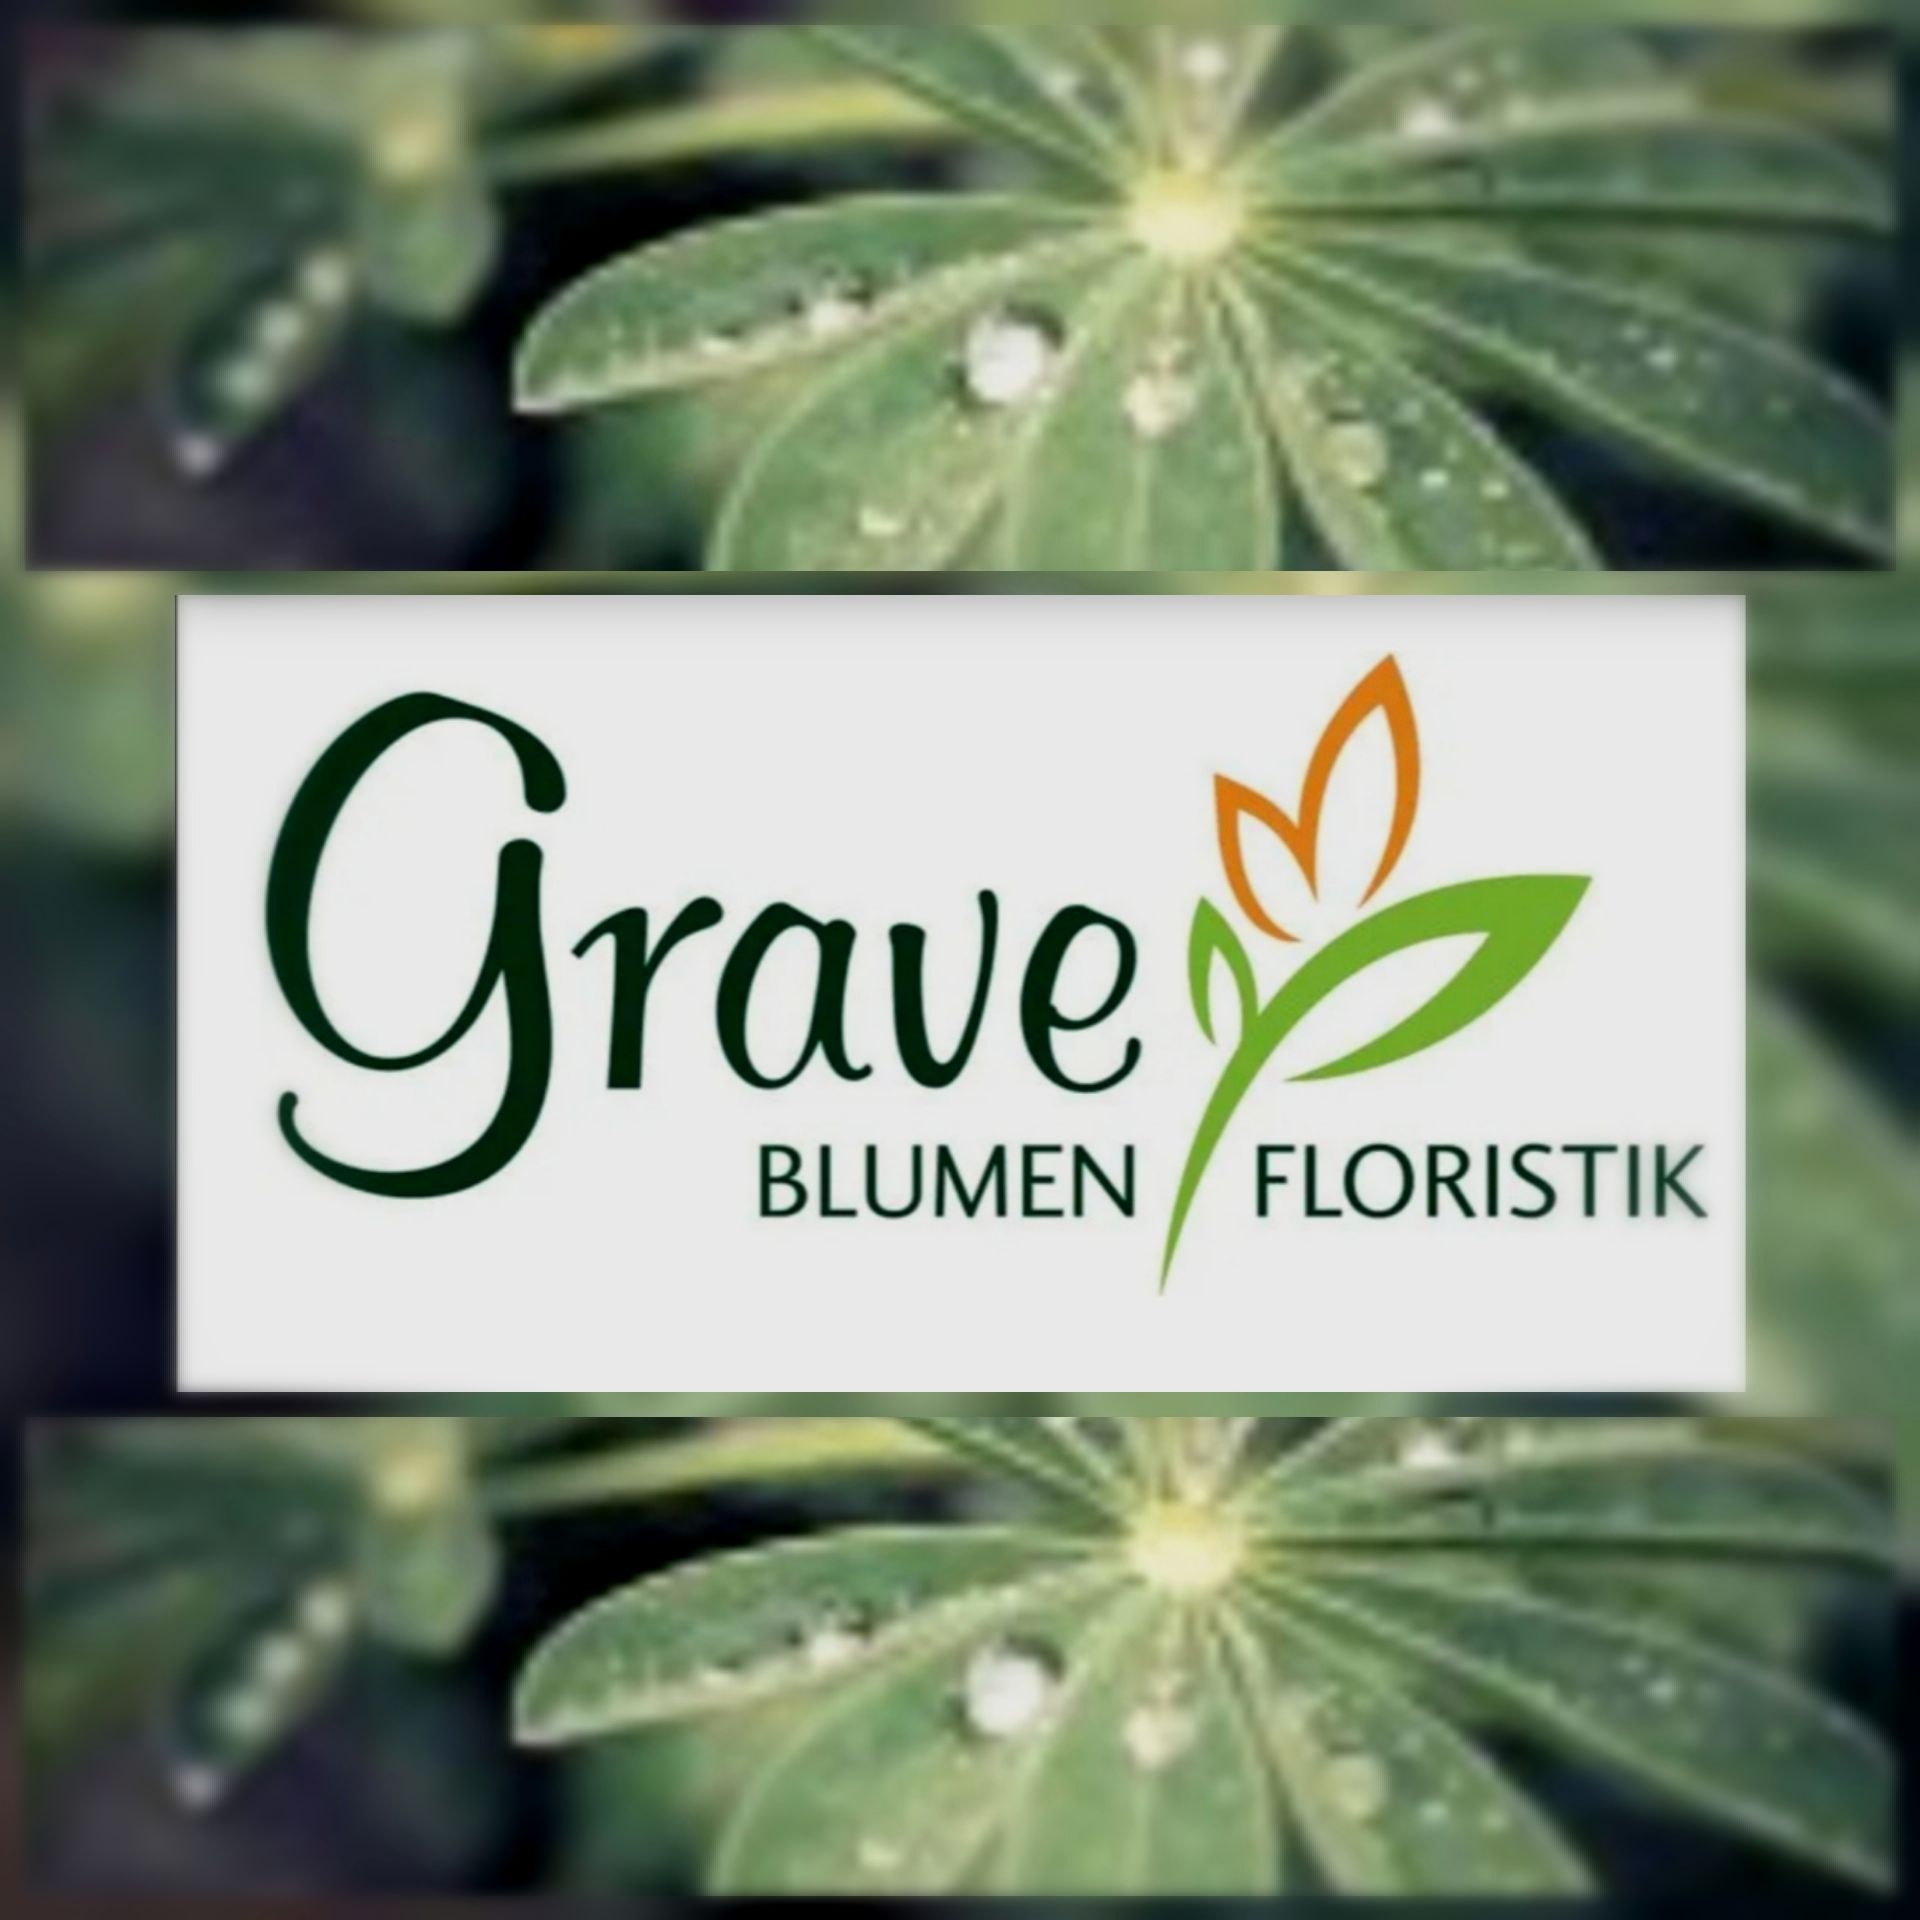 Blumen und Floristik Grave